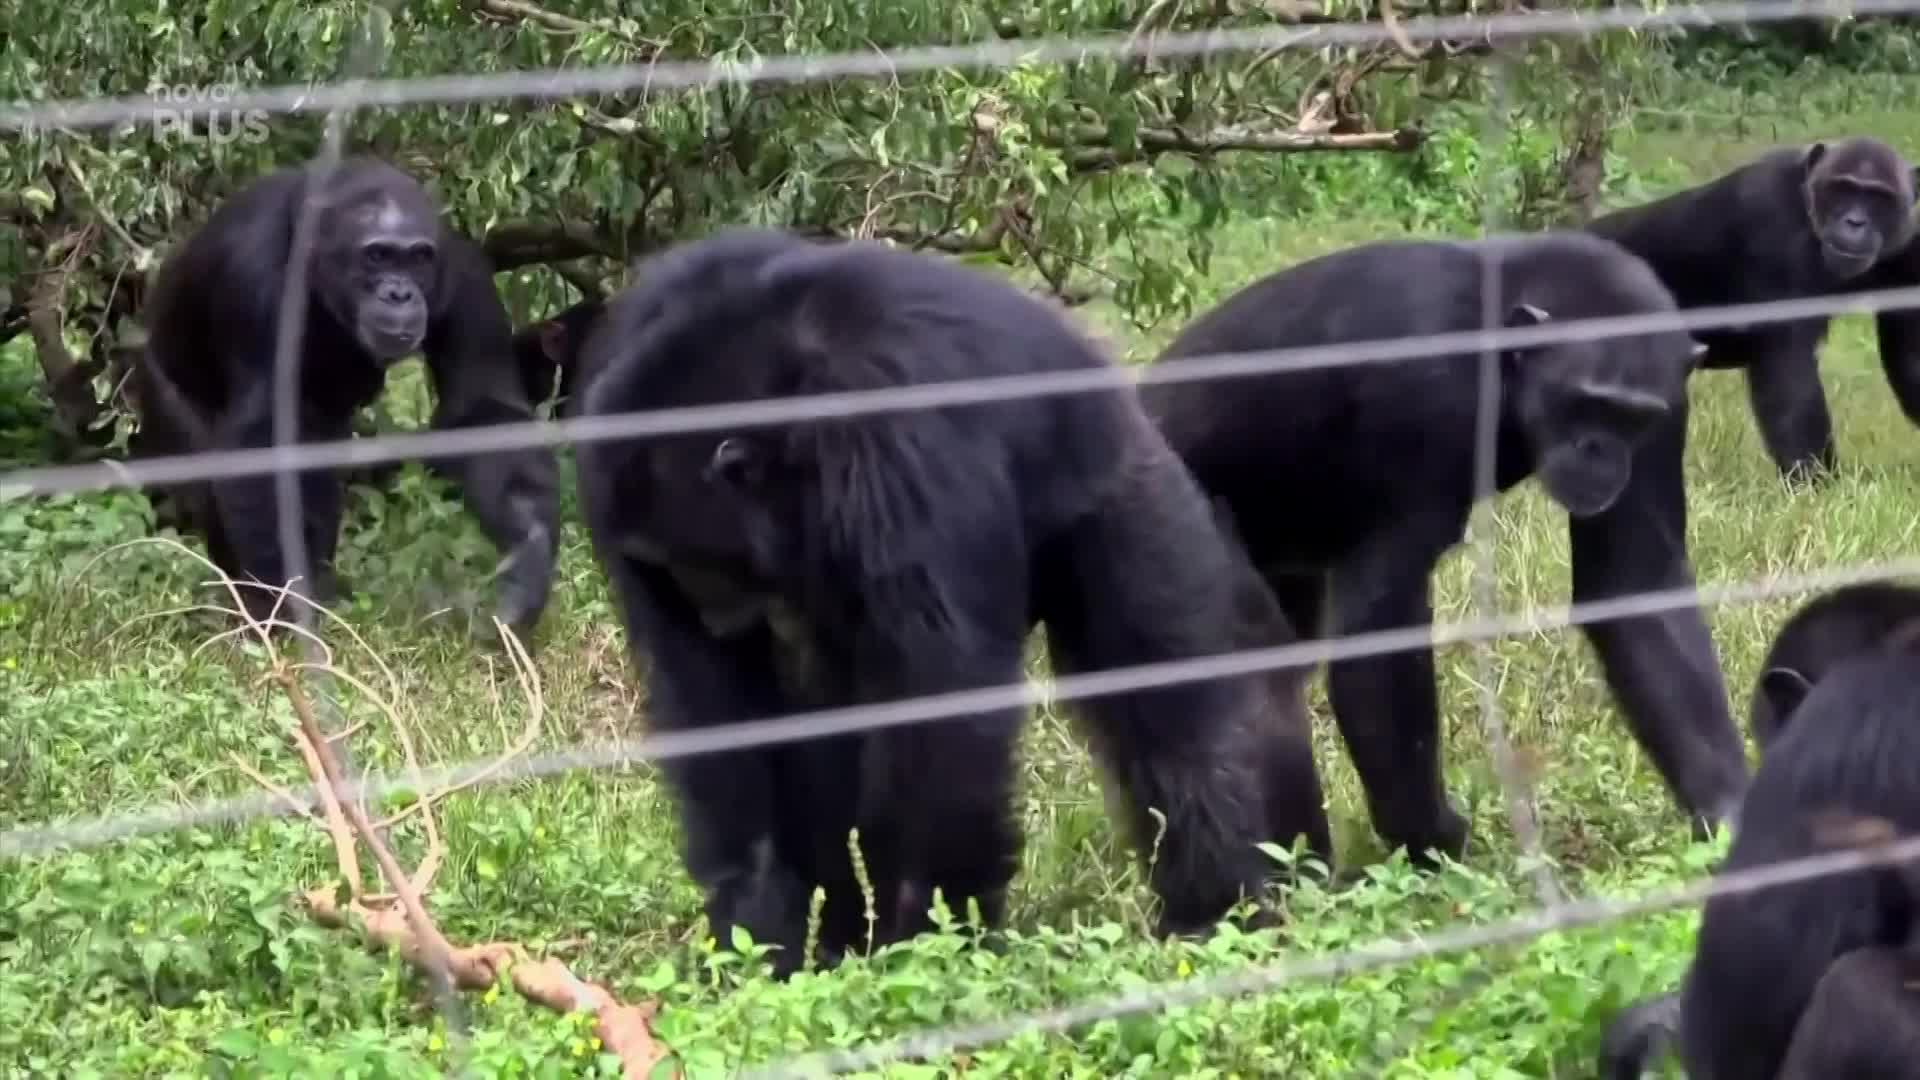 Jak to vypadá na šimpanzím ostrově? Primáti si užívají život v bezpečí rezervace